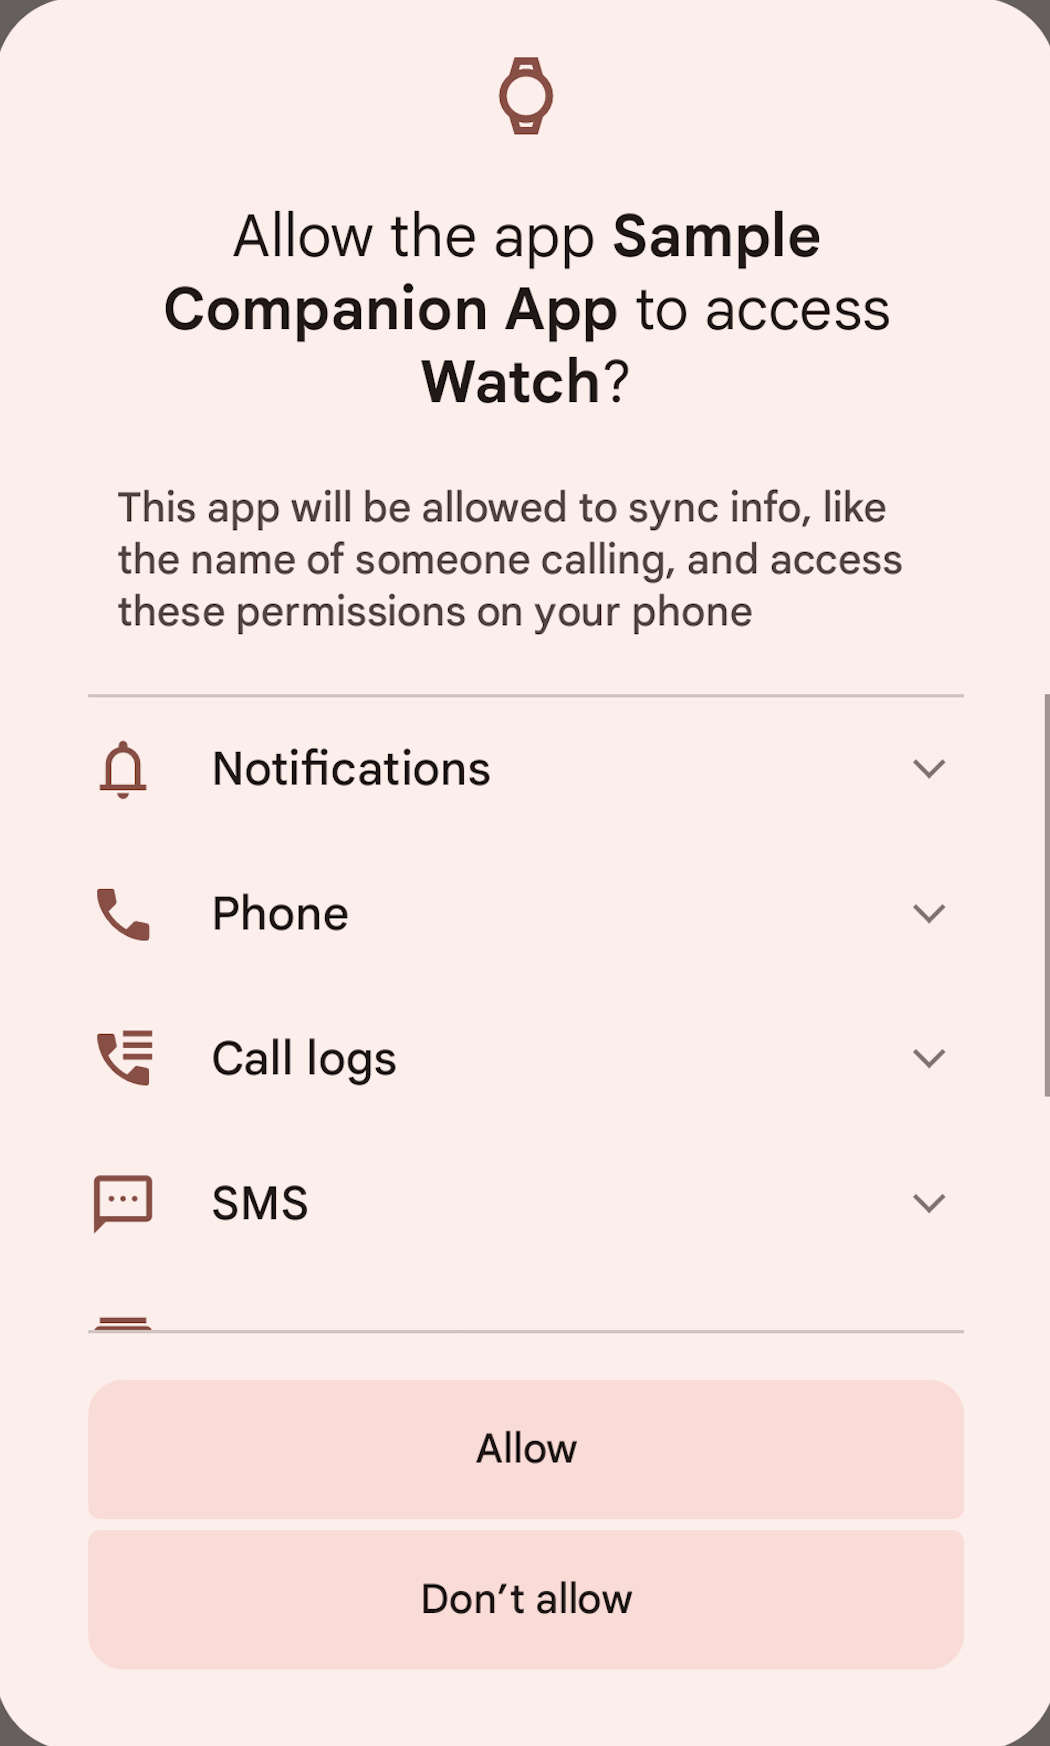 फ़ोन का स्क्रीनशॉट जिसमें अनुमतियाँ प्रदान करने का त्वरित प्रस्ताव दिखाया गया है